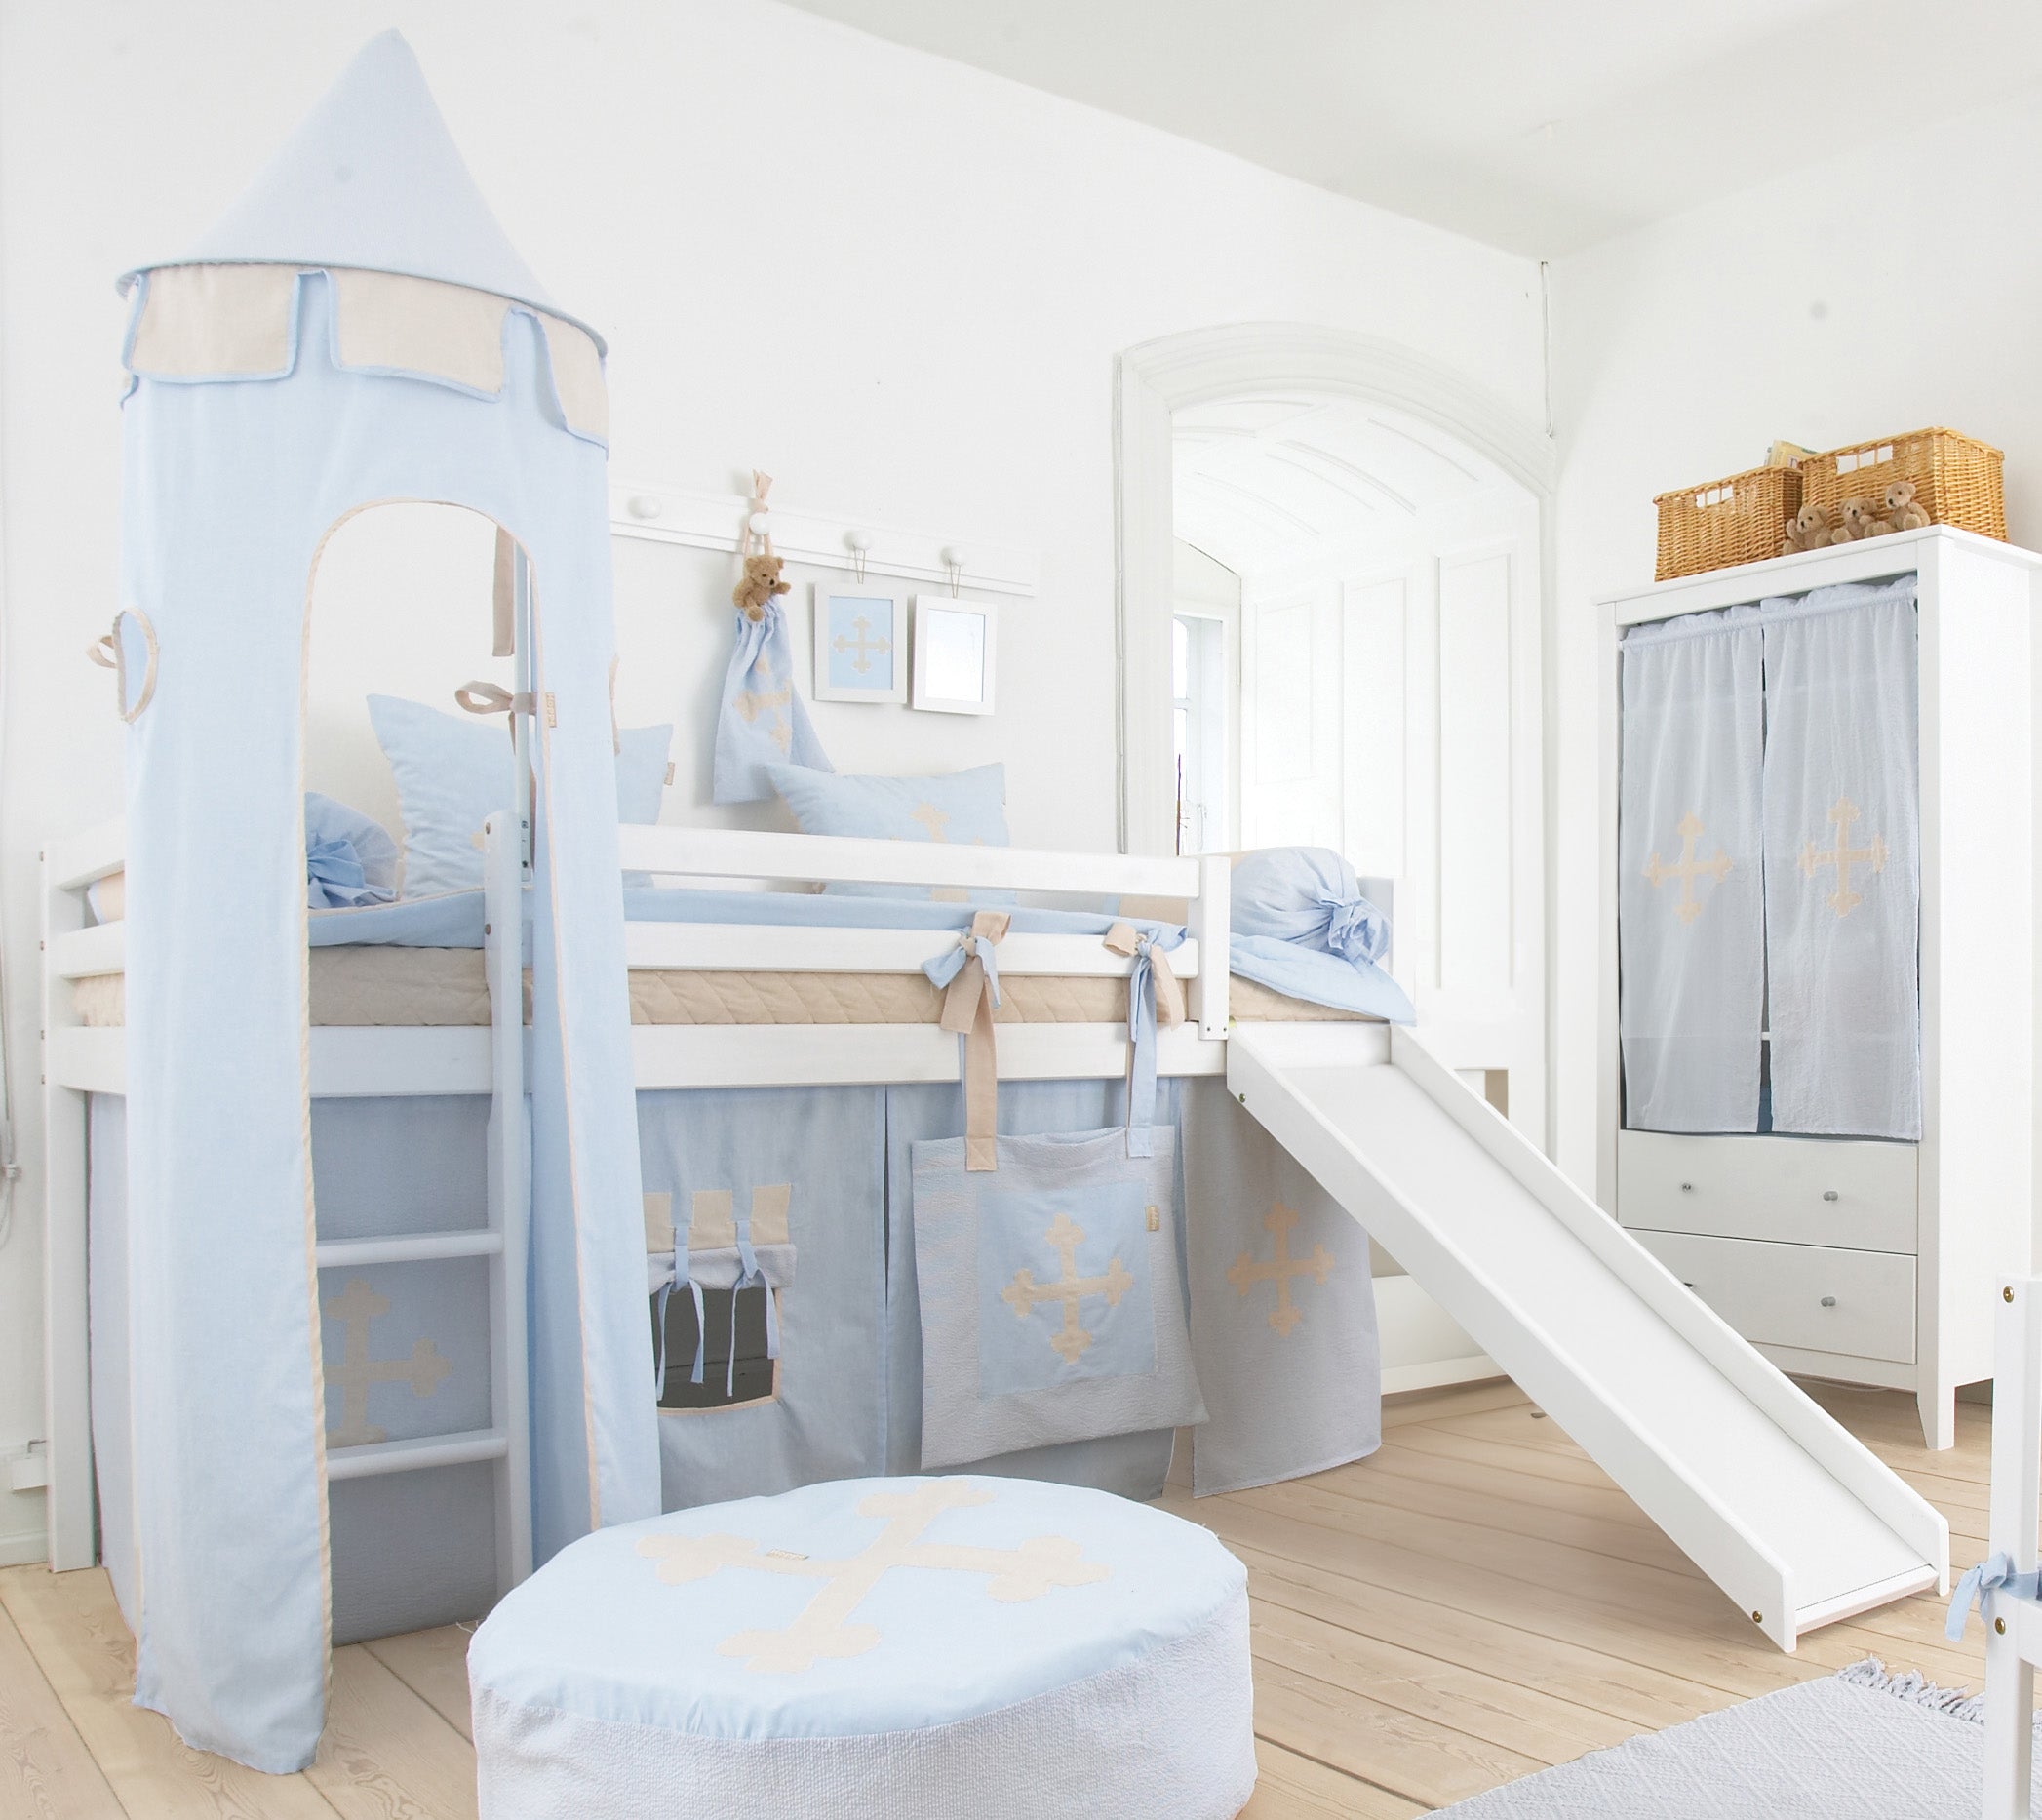 Hoppekids Fairytale Knight sengetaske med bånd til å knyte